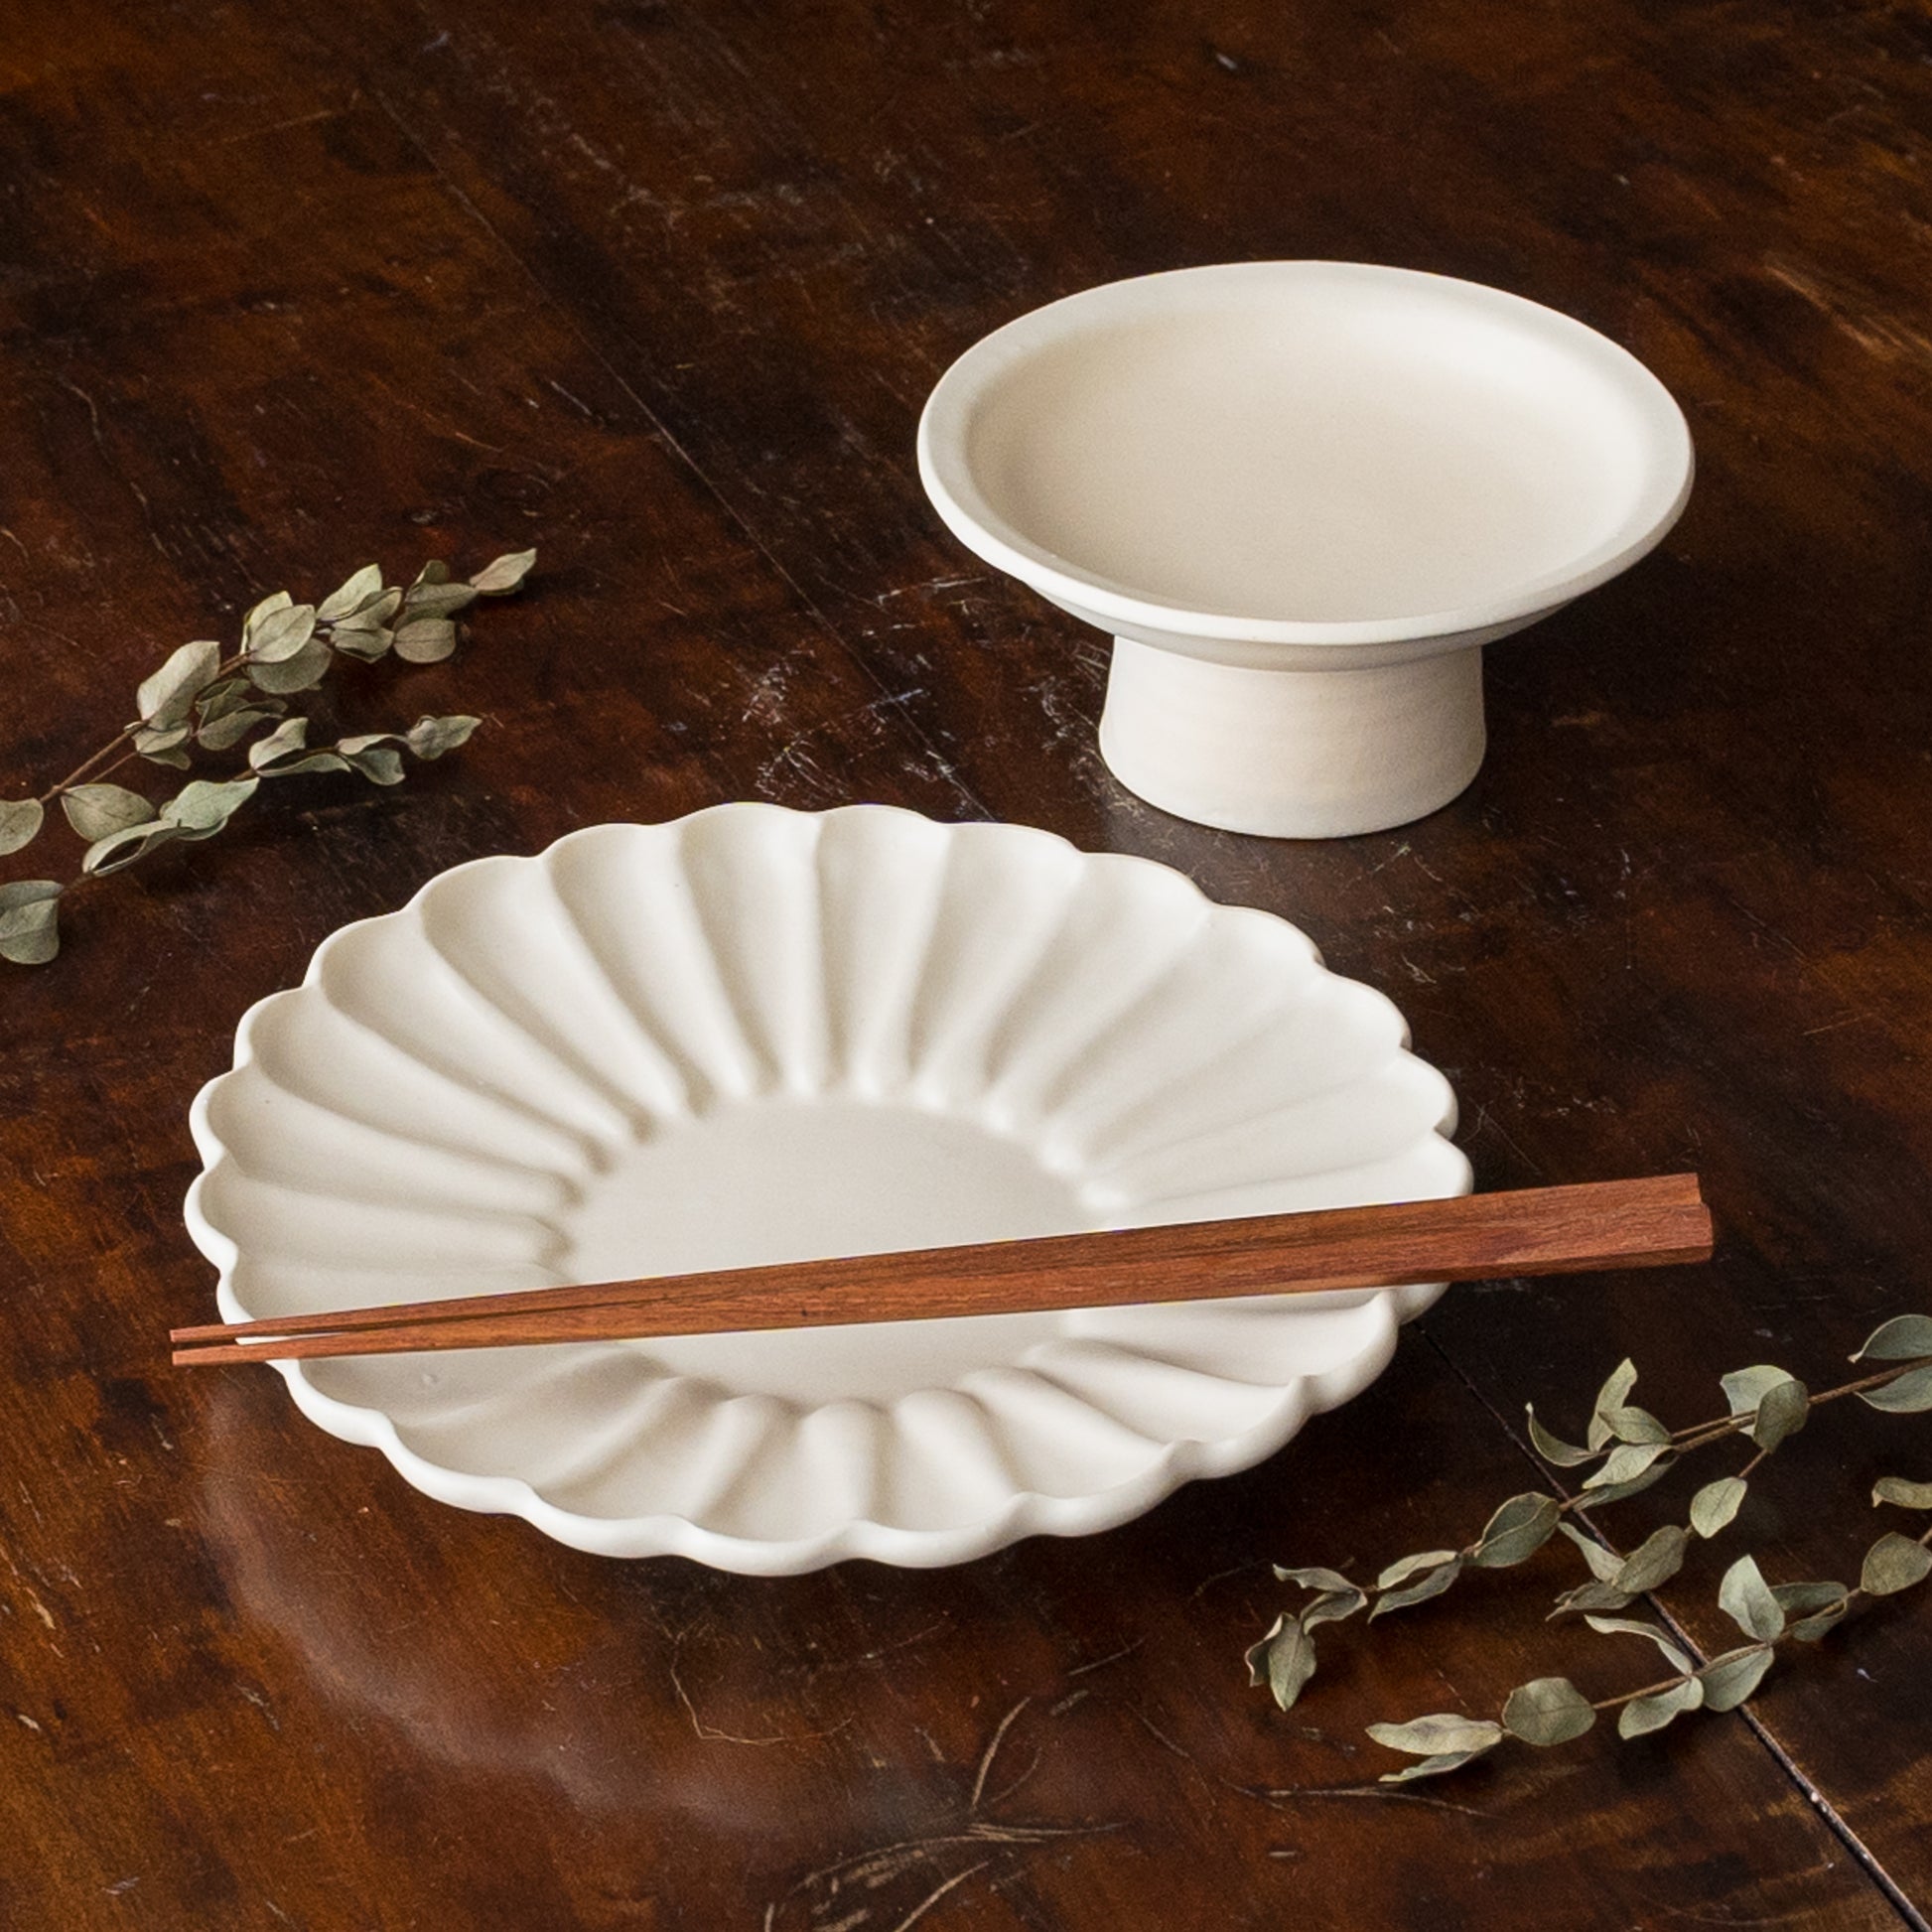 食卓の雰囲気がぐっと上がるyoshida potteryの輪花皿と高杯皿